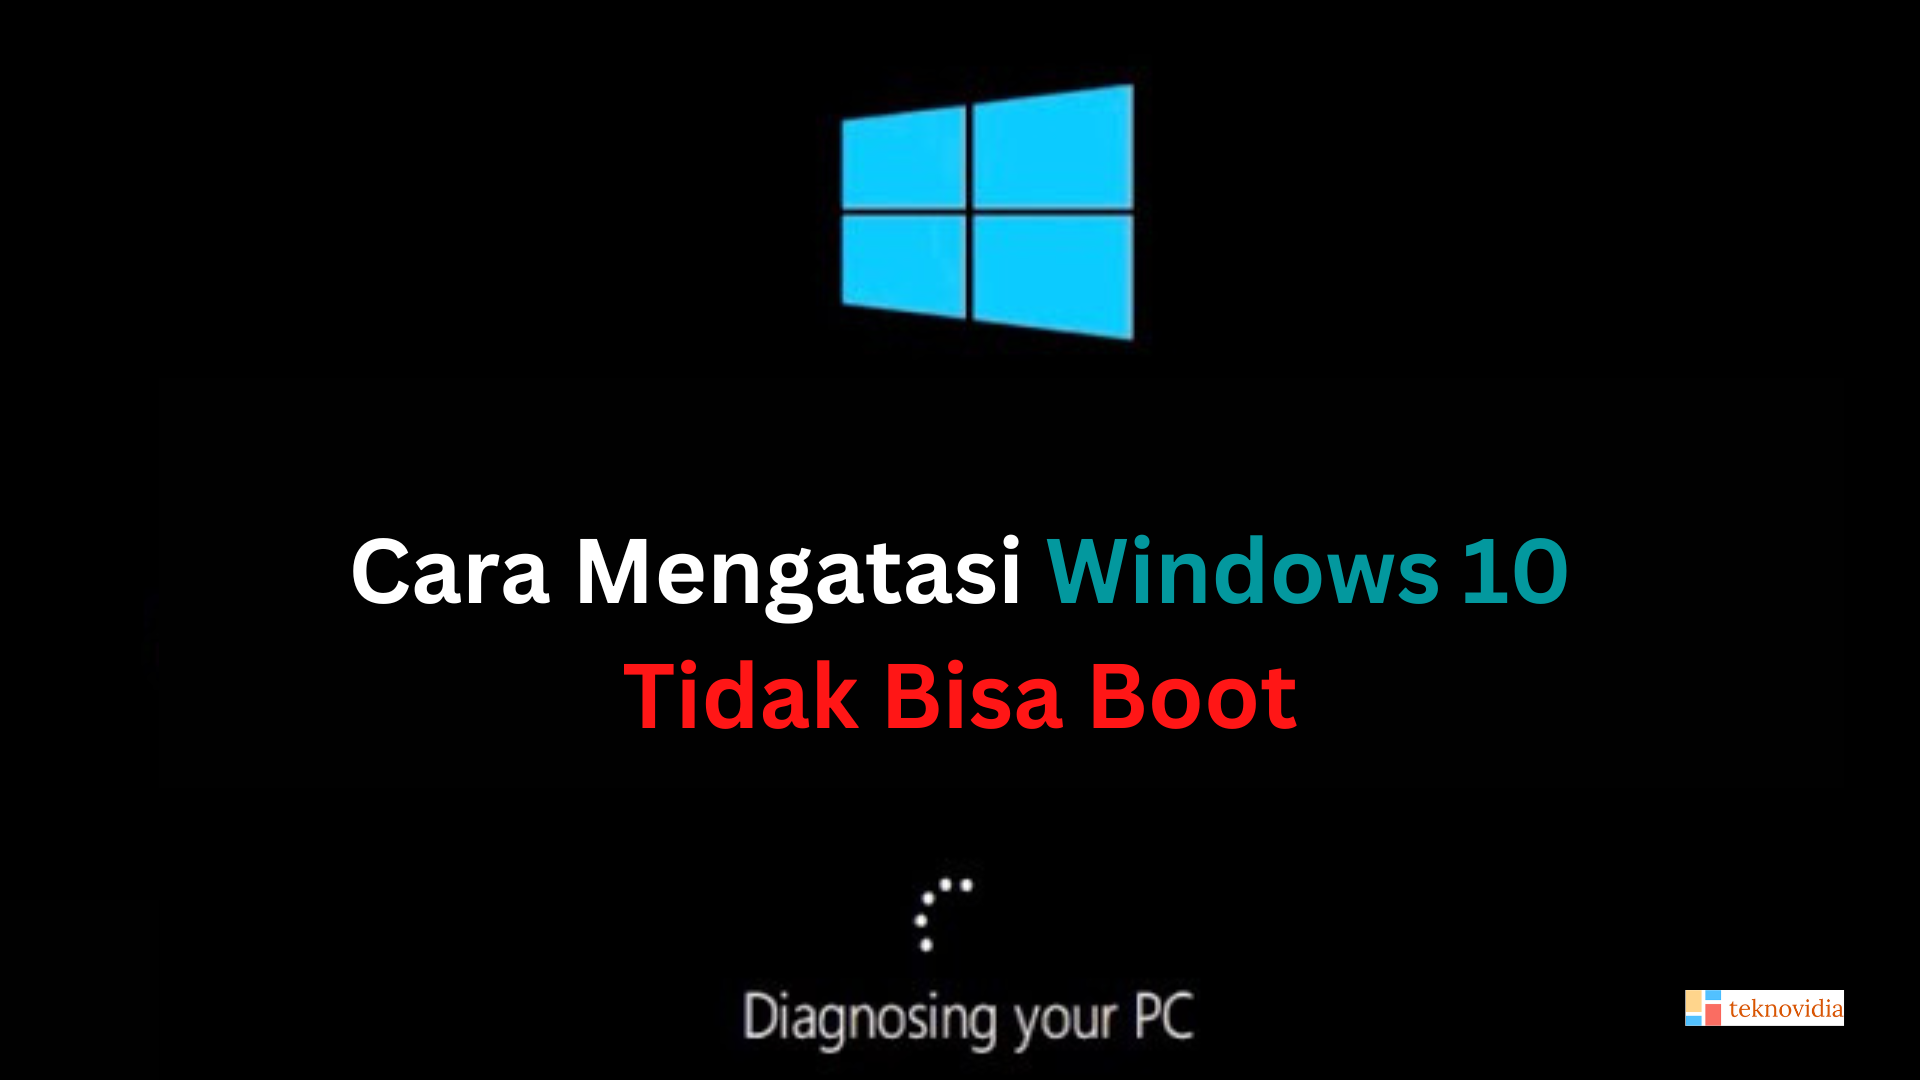 Cara Mengatasi Windows 10 Tidak Bisa Boot